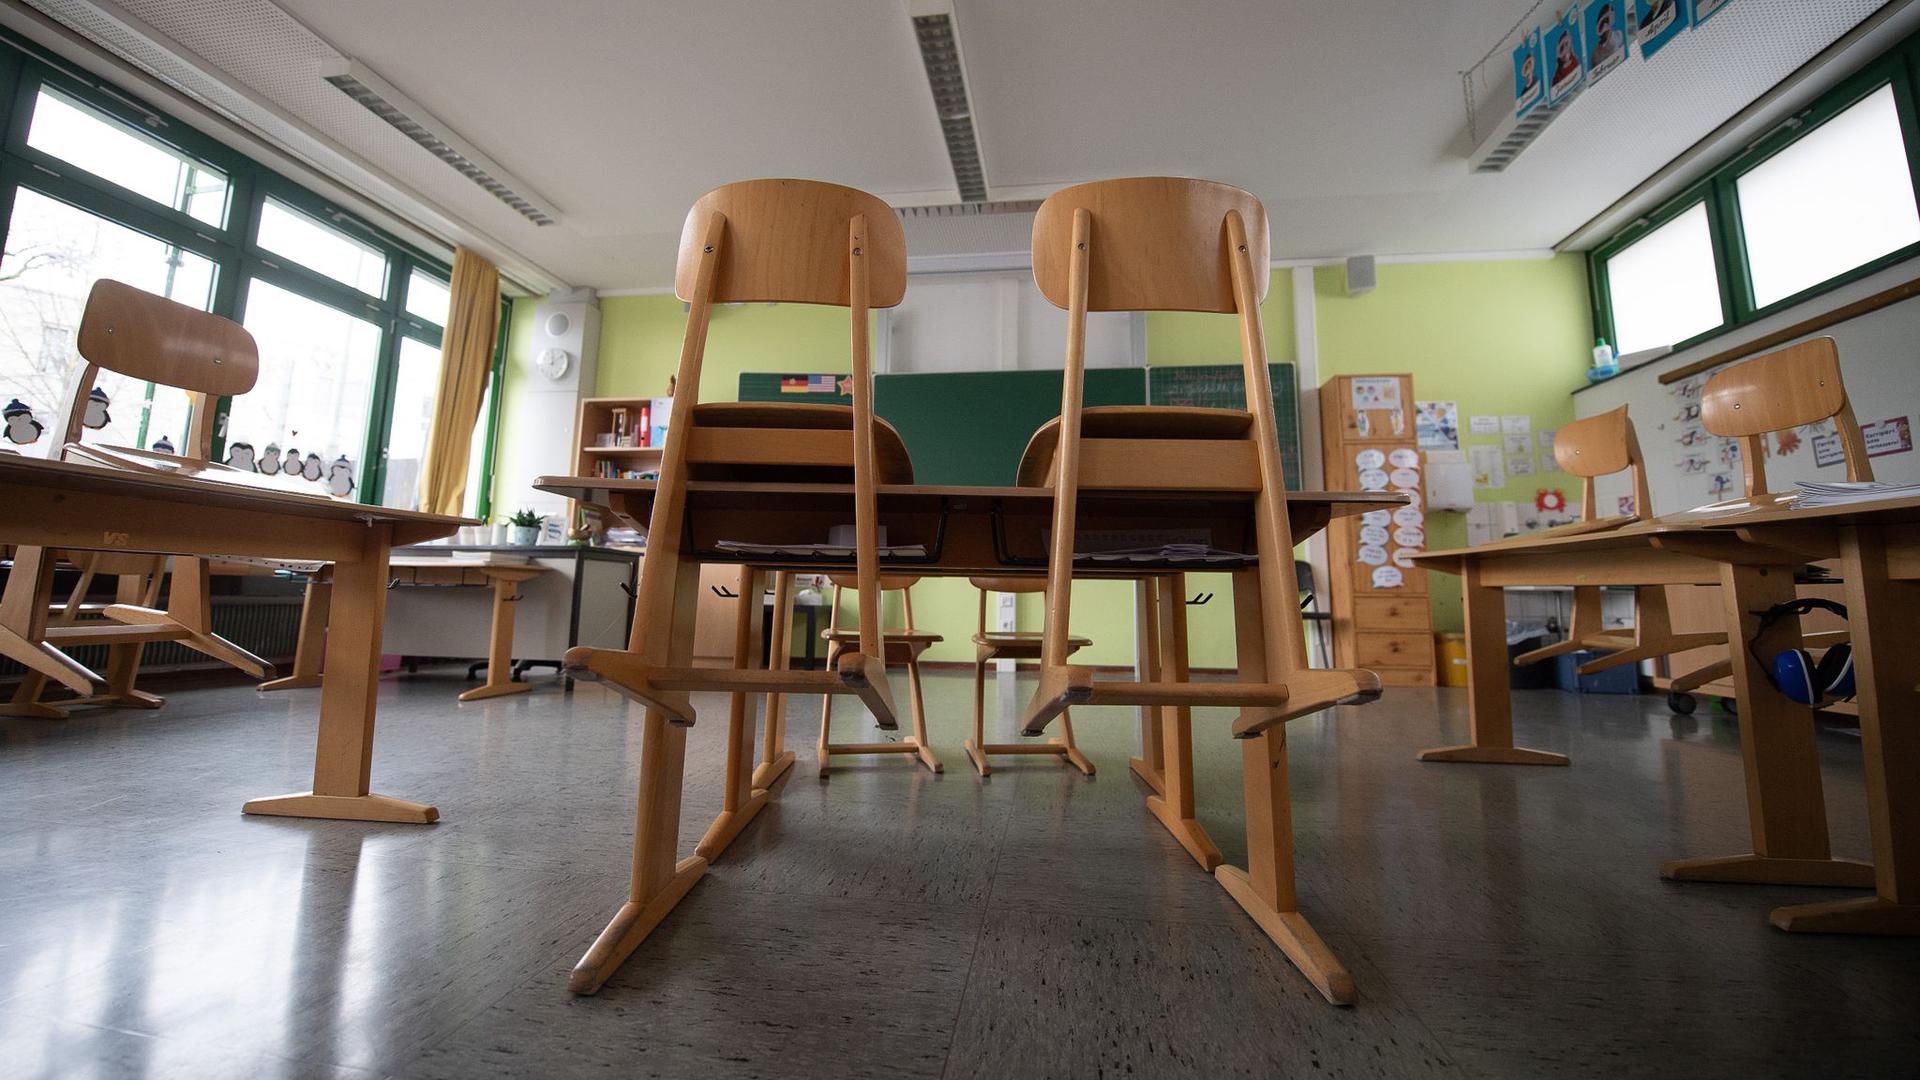 Am Montag ist Großstreiktag in Deutschland – deshalb gibt es für viele Schülerinnen und Schüler Sonderregelungen.